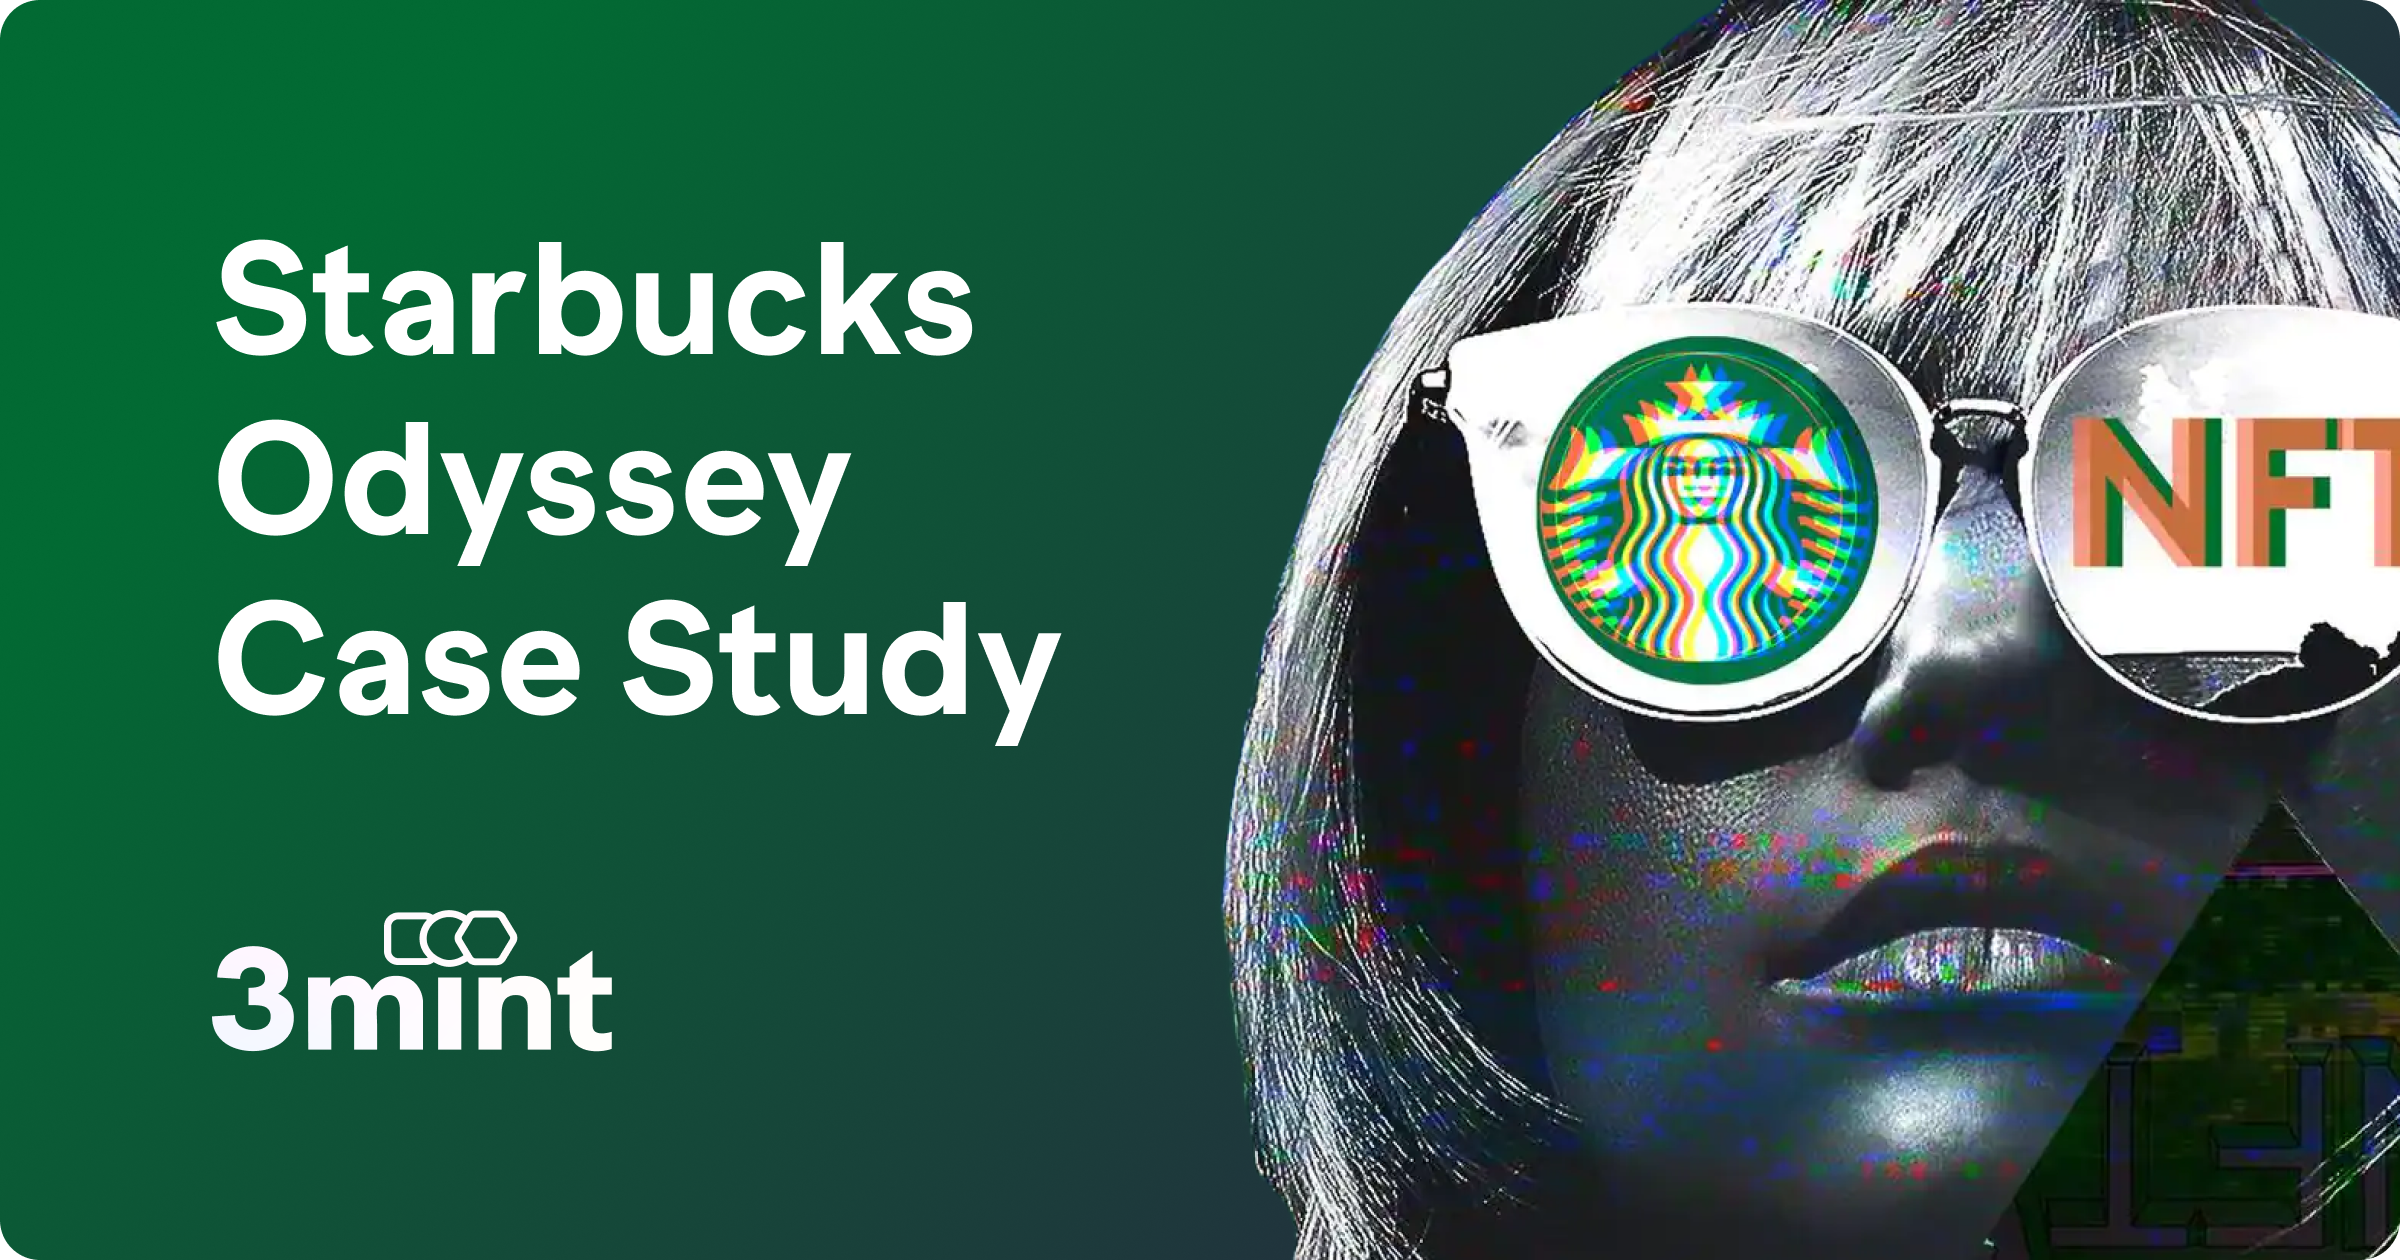 Case Study: Starbucks Odyssey